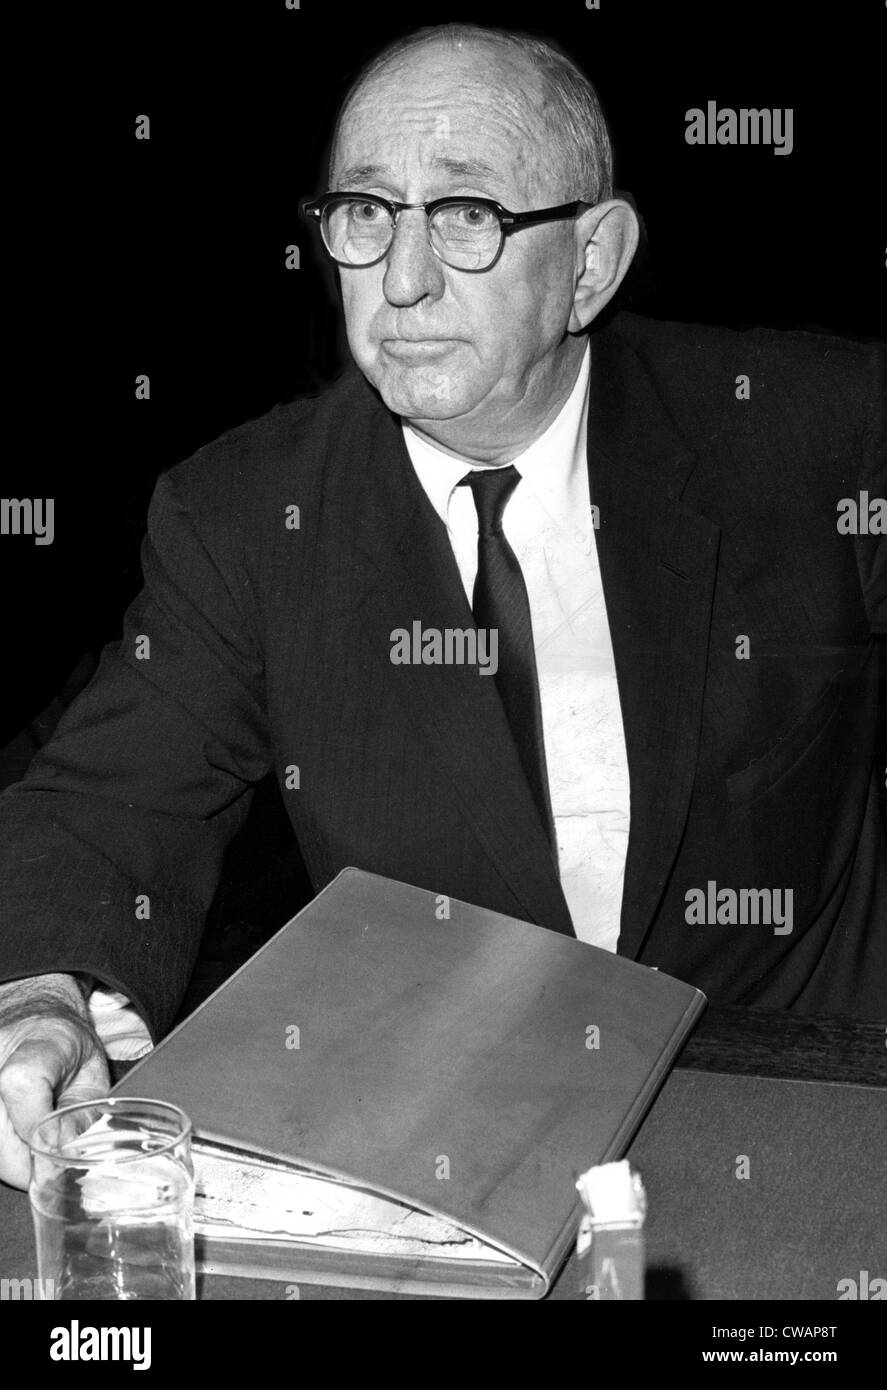 El senador Richard B. Russell, 1964. Cortesía: CSU Archives / Everett Collection Foto de stock